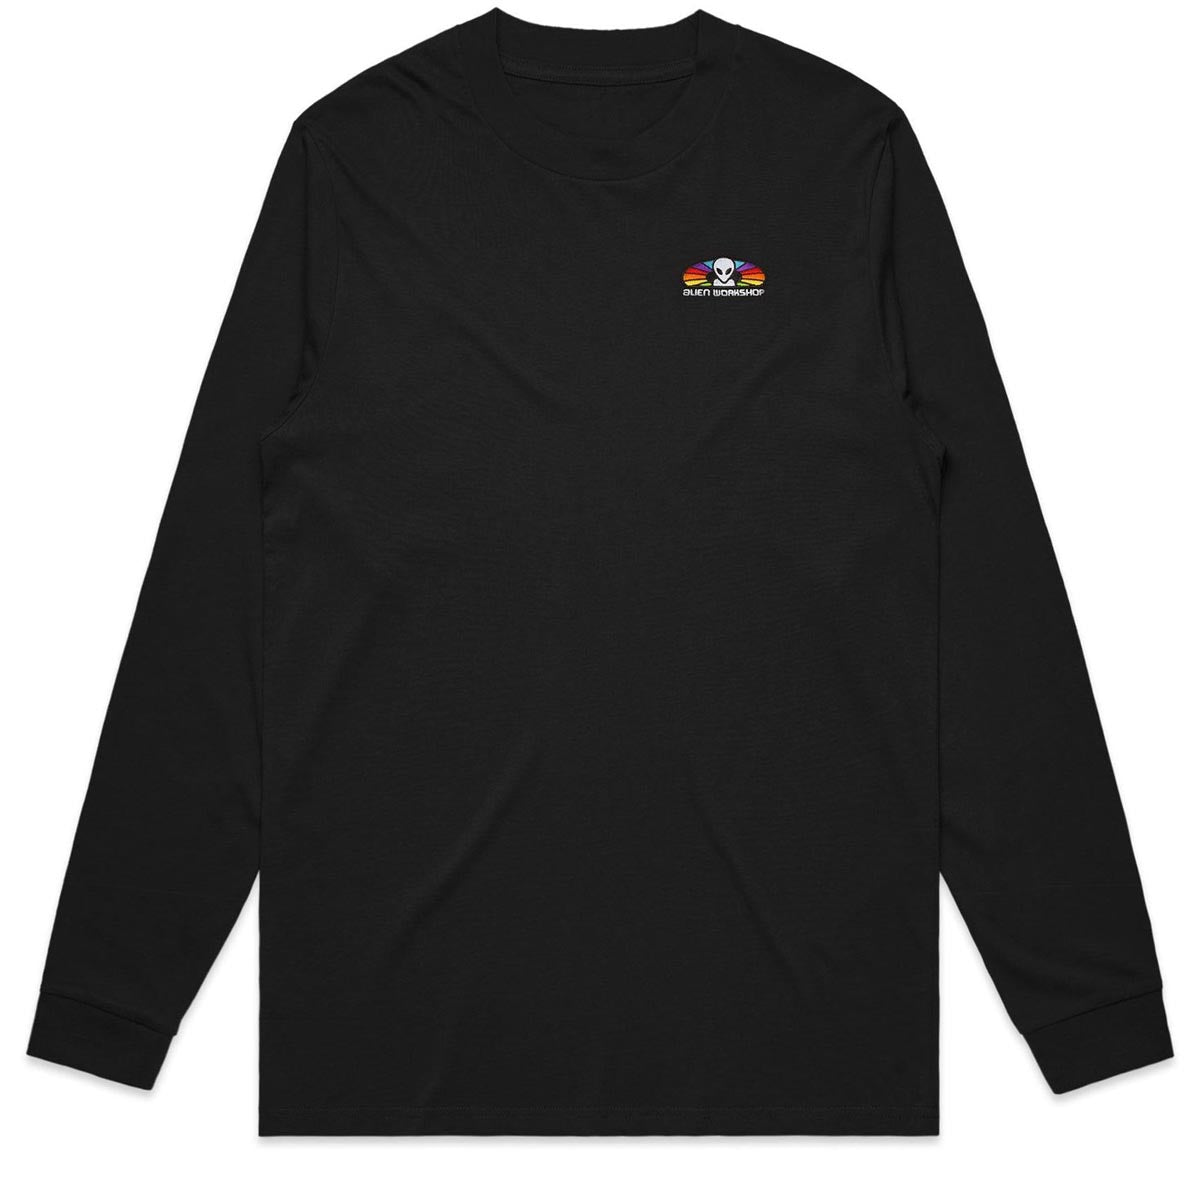 Alien Workshop Spectrum Embroidered Long Sleeve T-Shirt - Black image 1